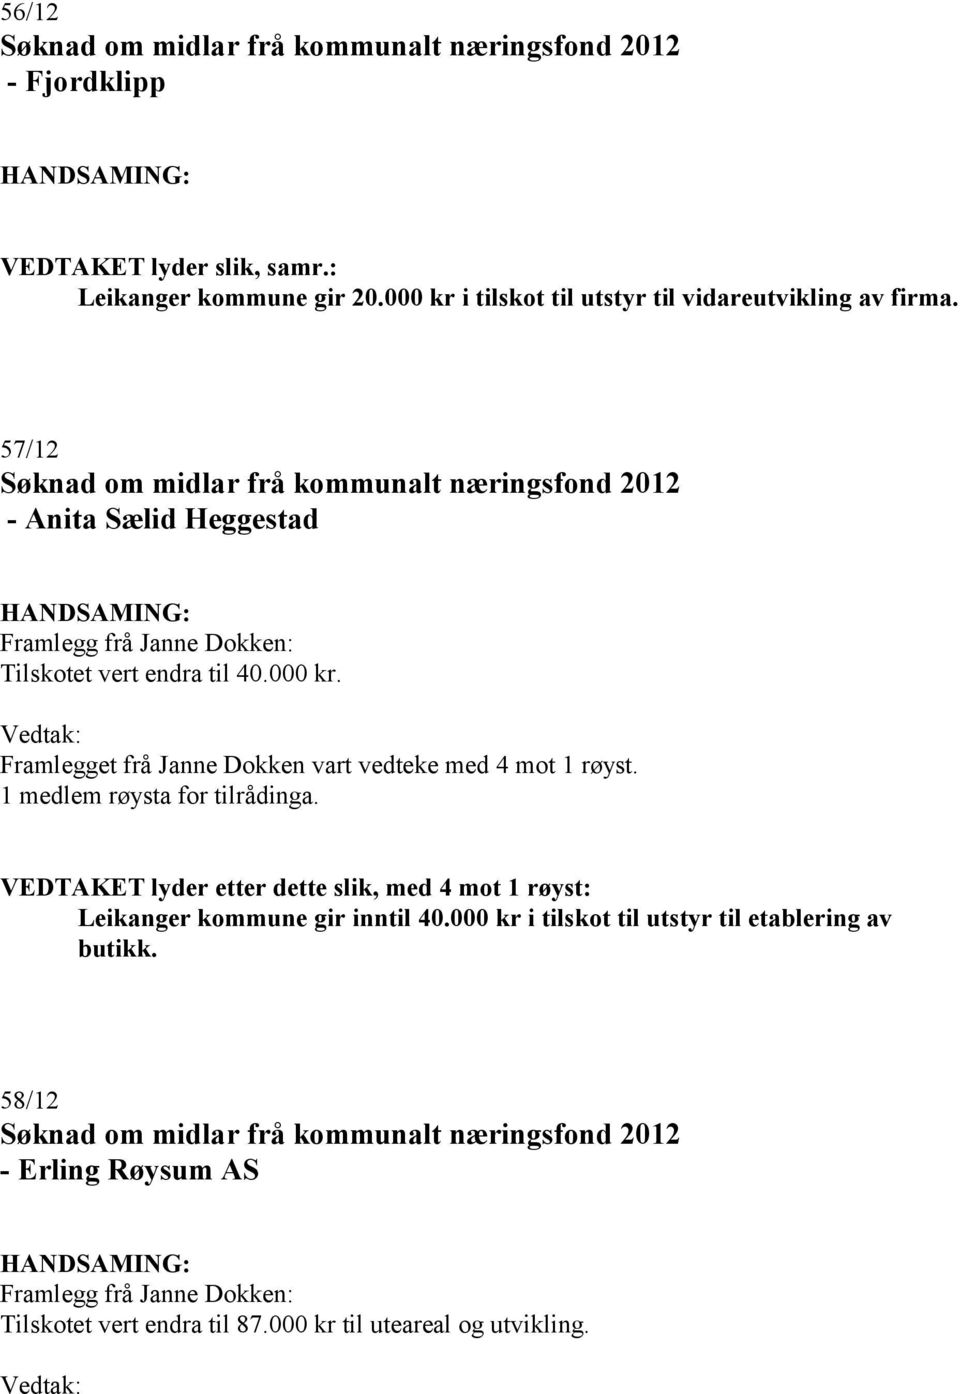 57/12 - Anita Sælid Heggestad Tilskotet vert endra til 40.000 kr.